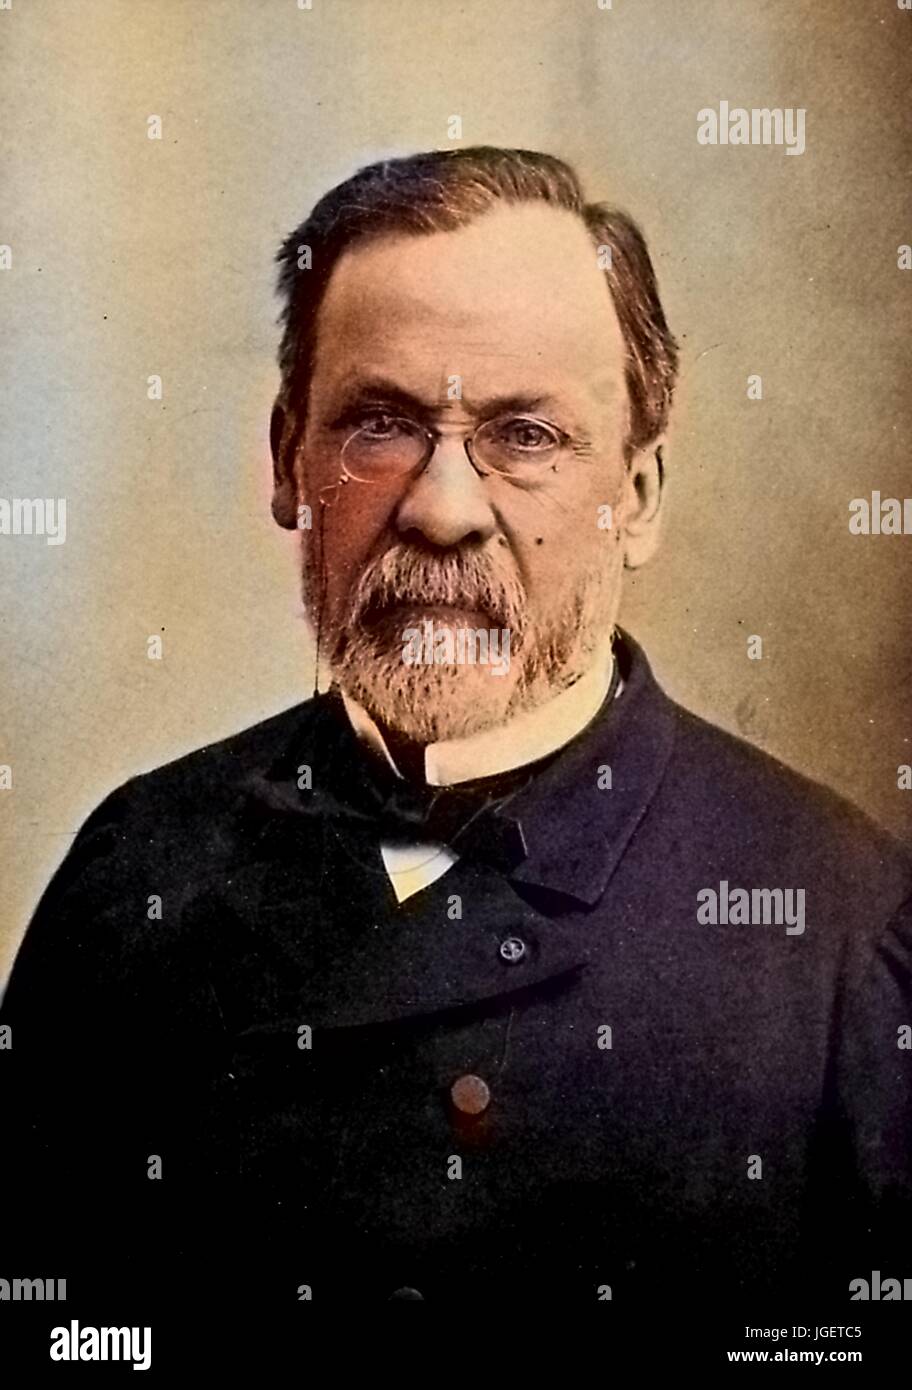 Porträt der Wissenschaftler Louis Pasteur, Frankreich, 1902. Hinweis: Bild wurde digital eingefärbt wurde mit einem modernen Verfahren. Farben können Zeit ungenau sein. Stockfoto